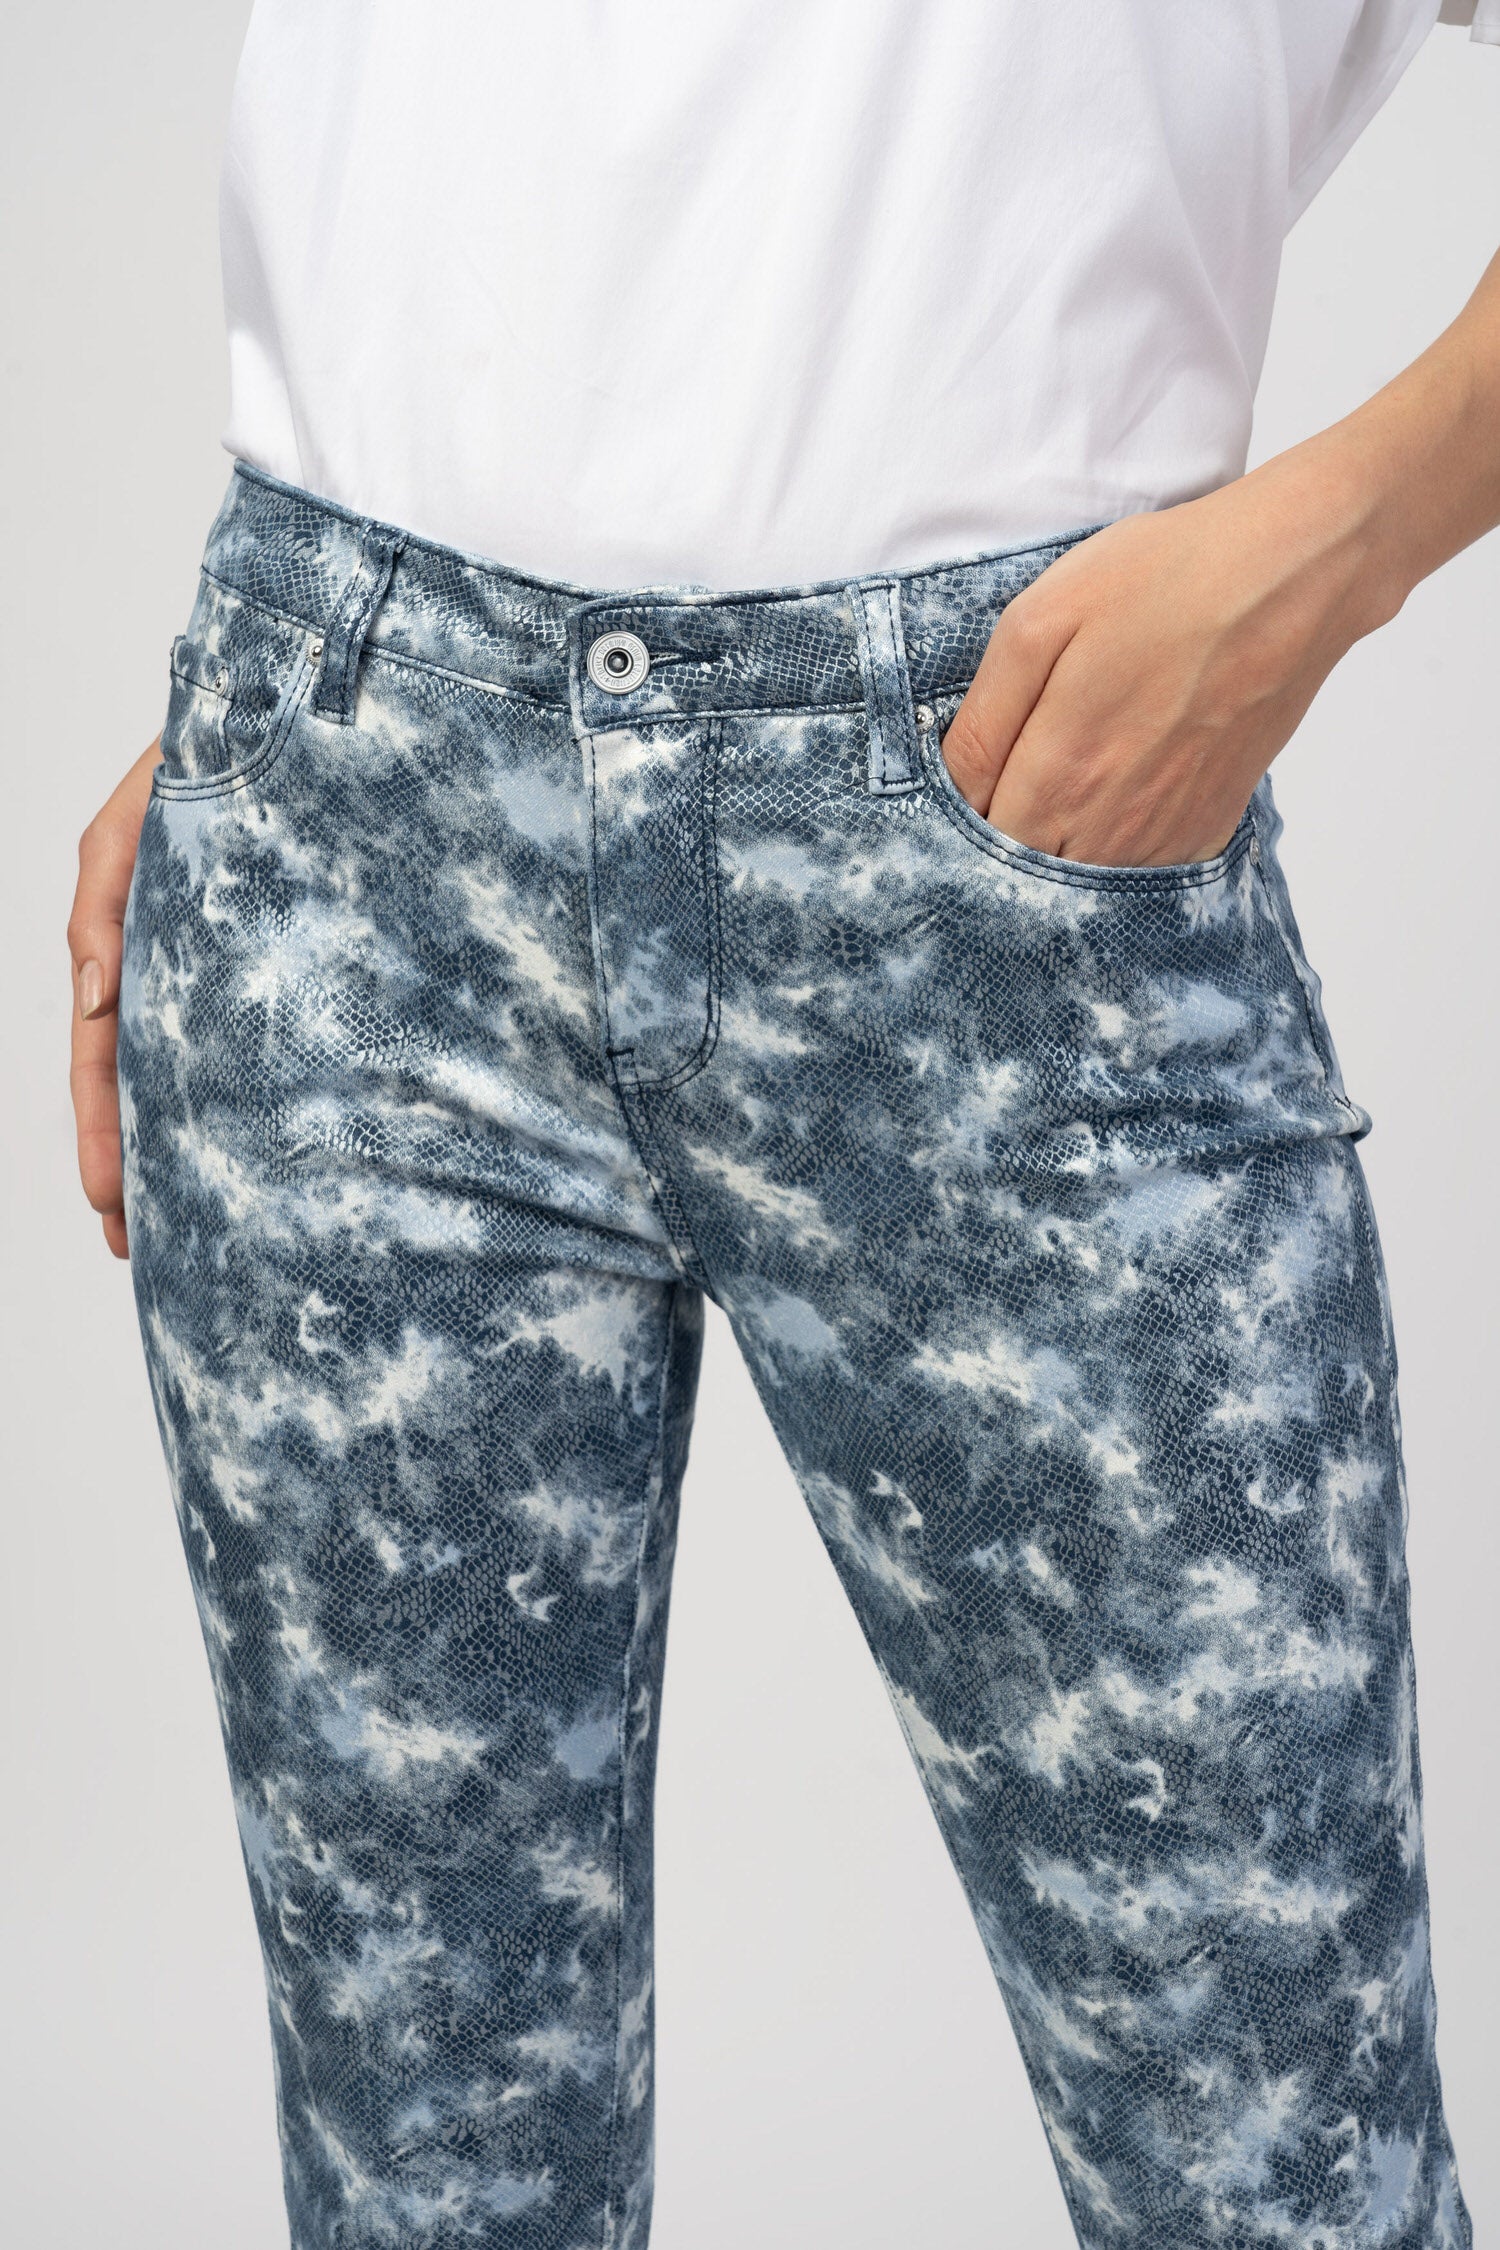 Pantalones impresos de camuflaje - Diez